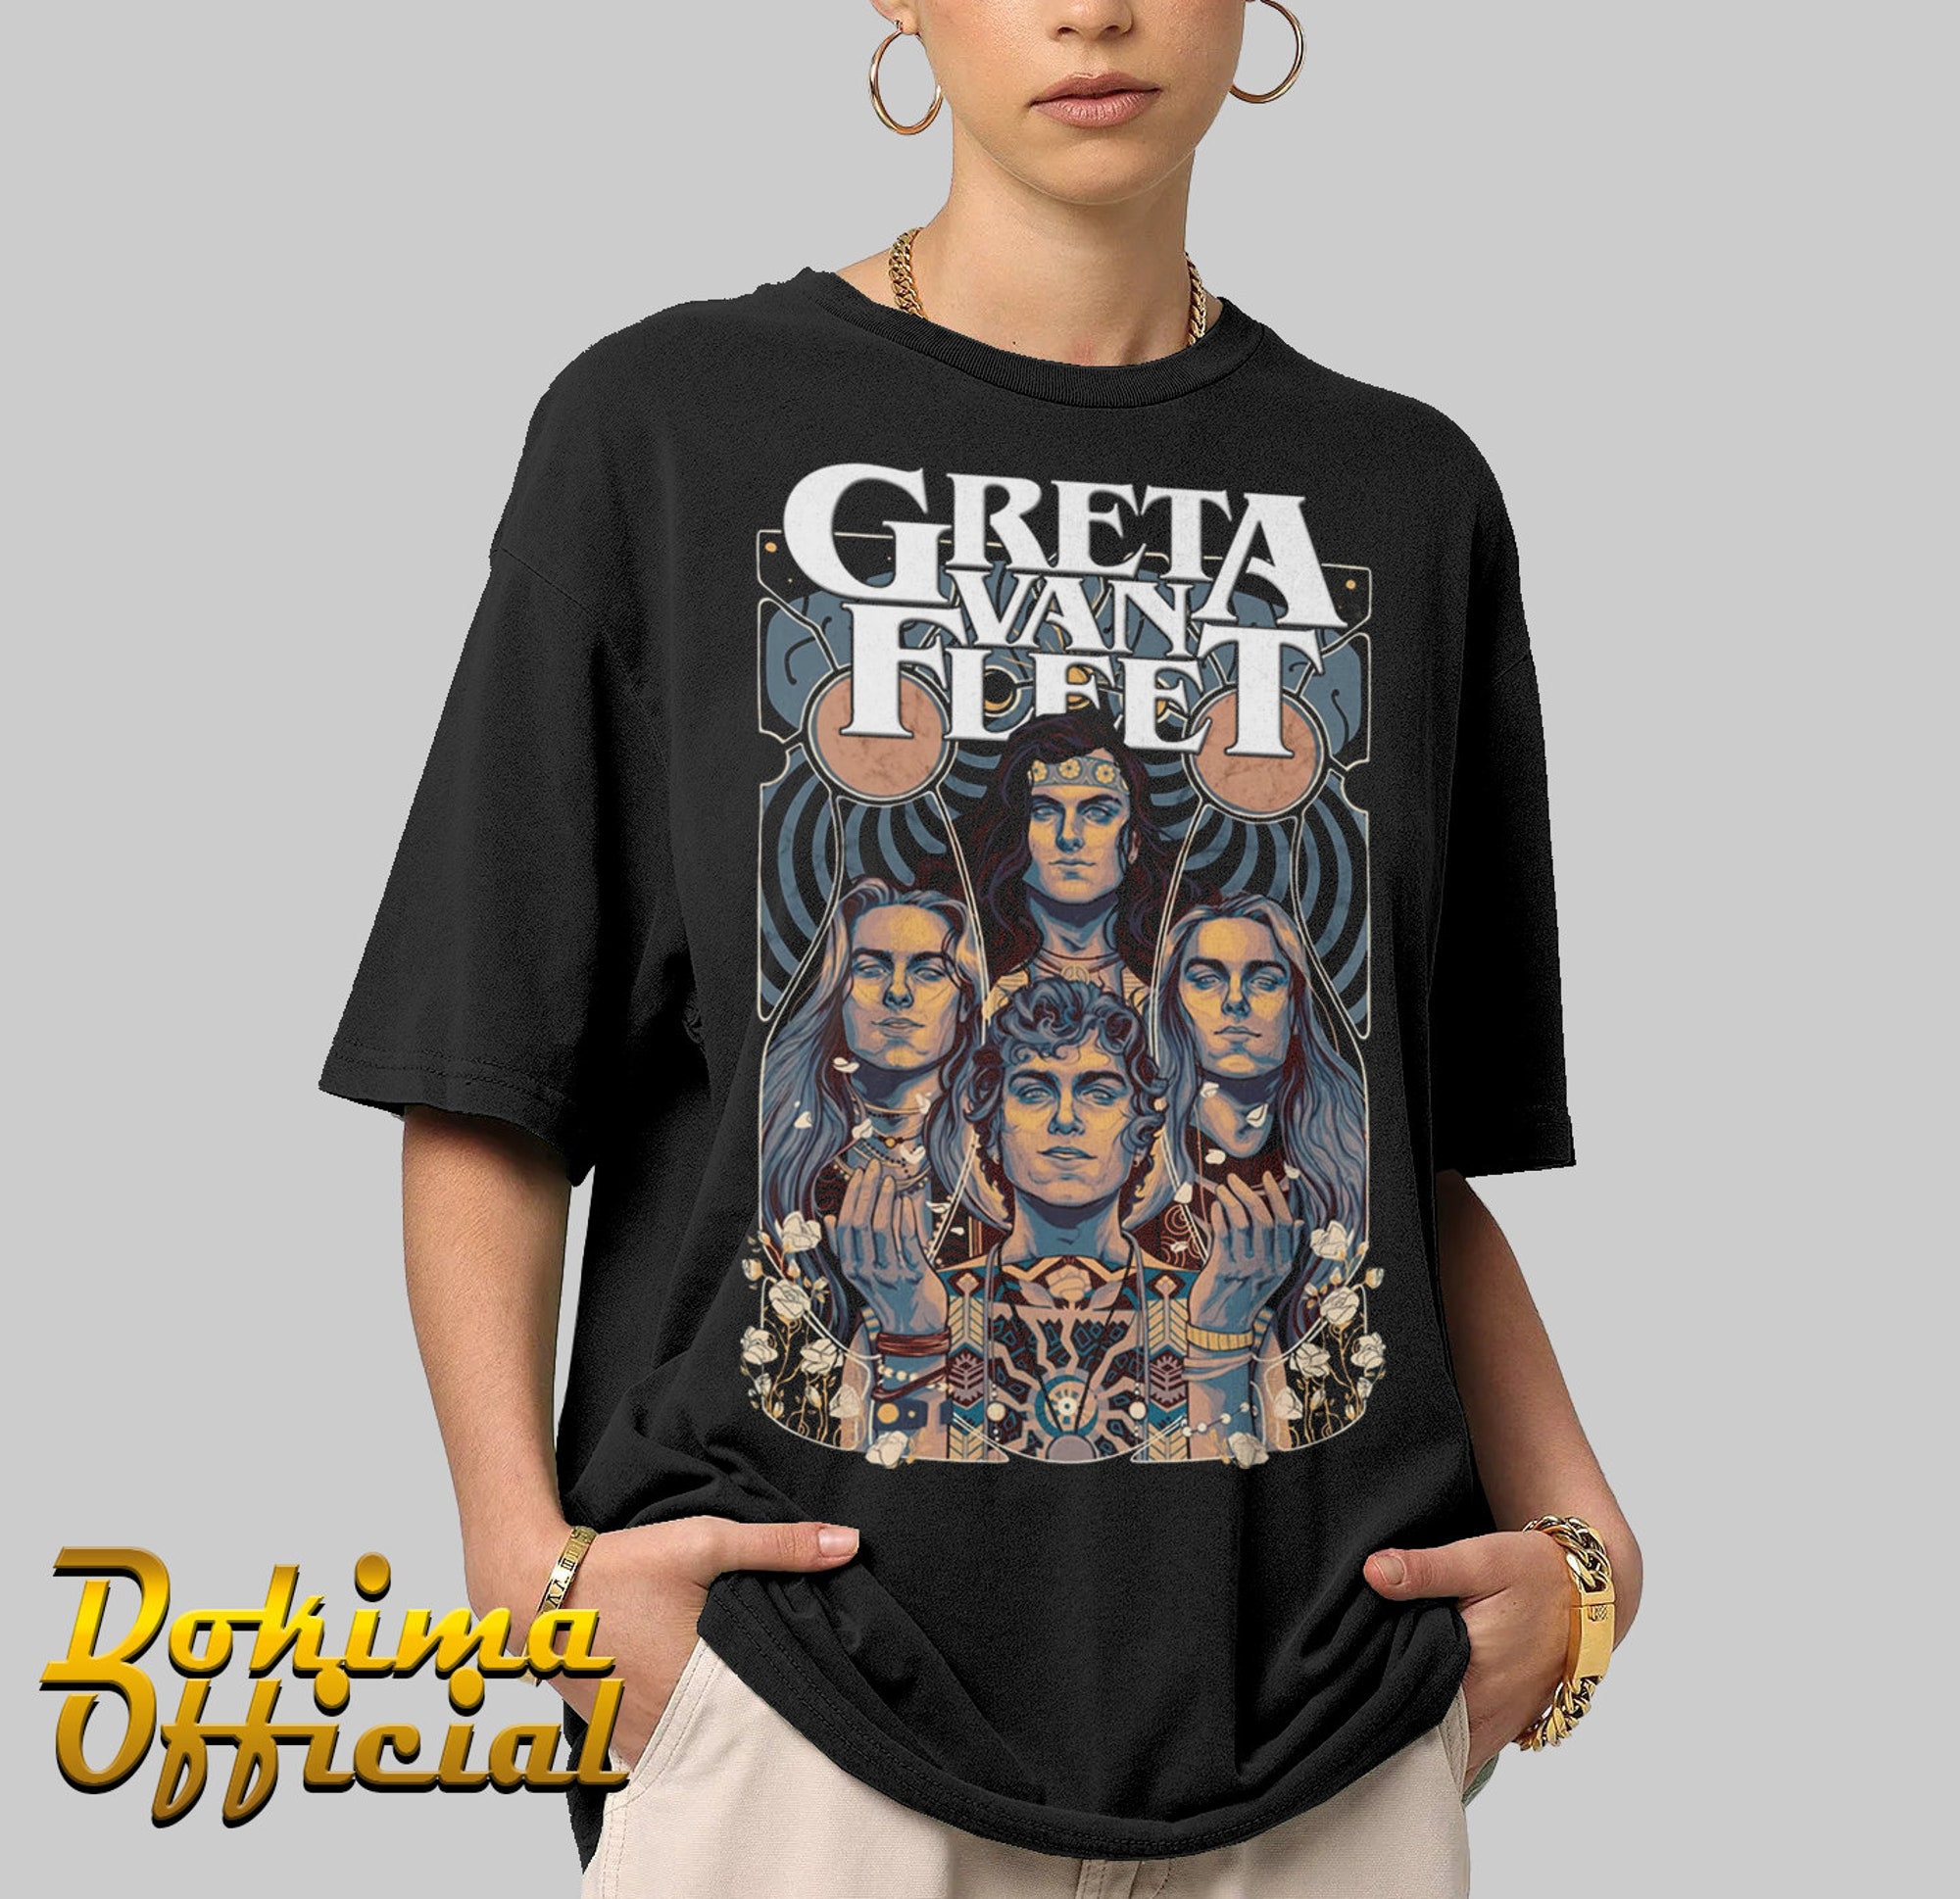 Discover Greta Van Fleet, Greta Van Fleet Shirt